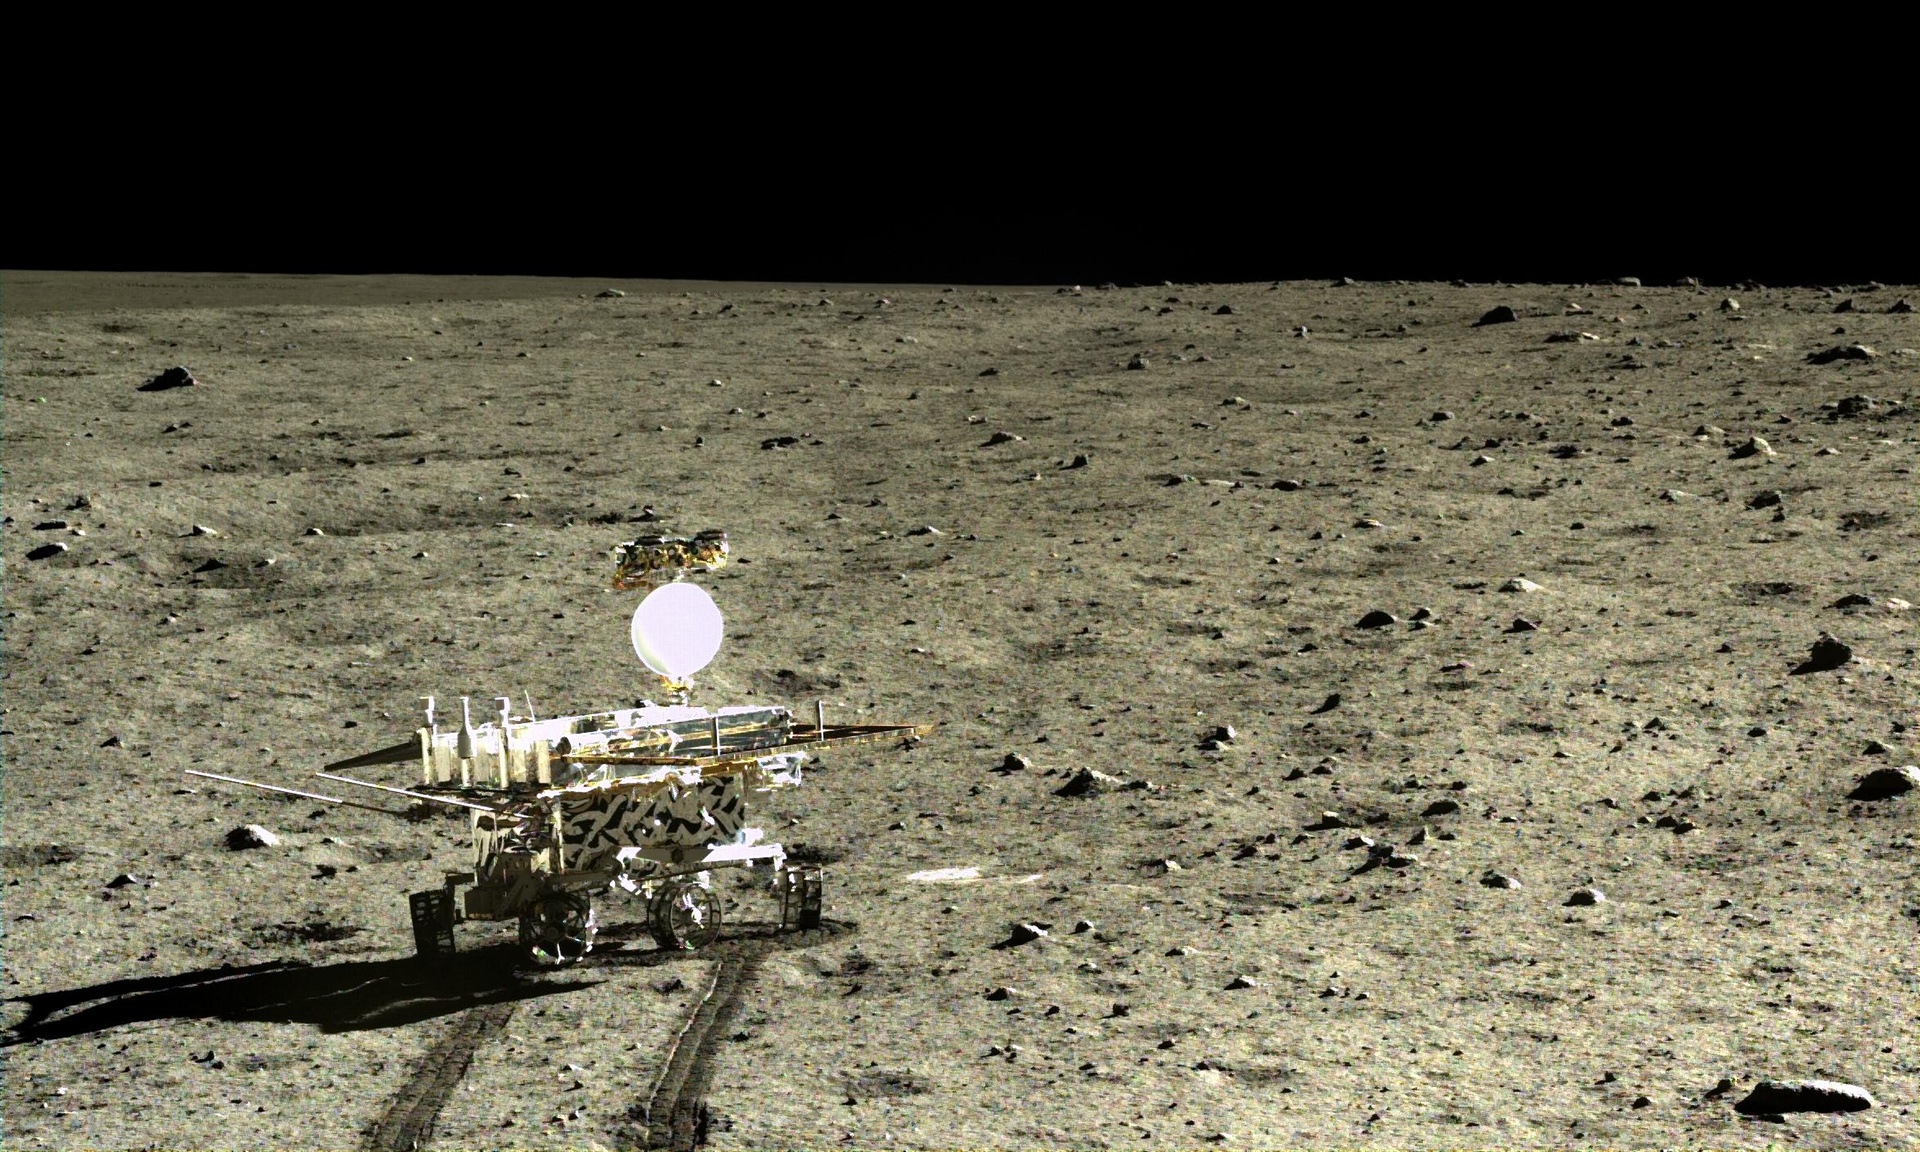 Κινέζοι ανακάλυψαν ένα νέο είδος πετρώματος στη Σελήνη